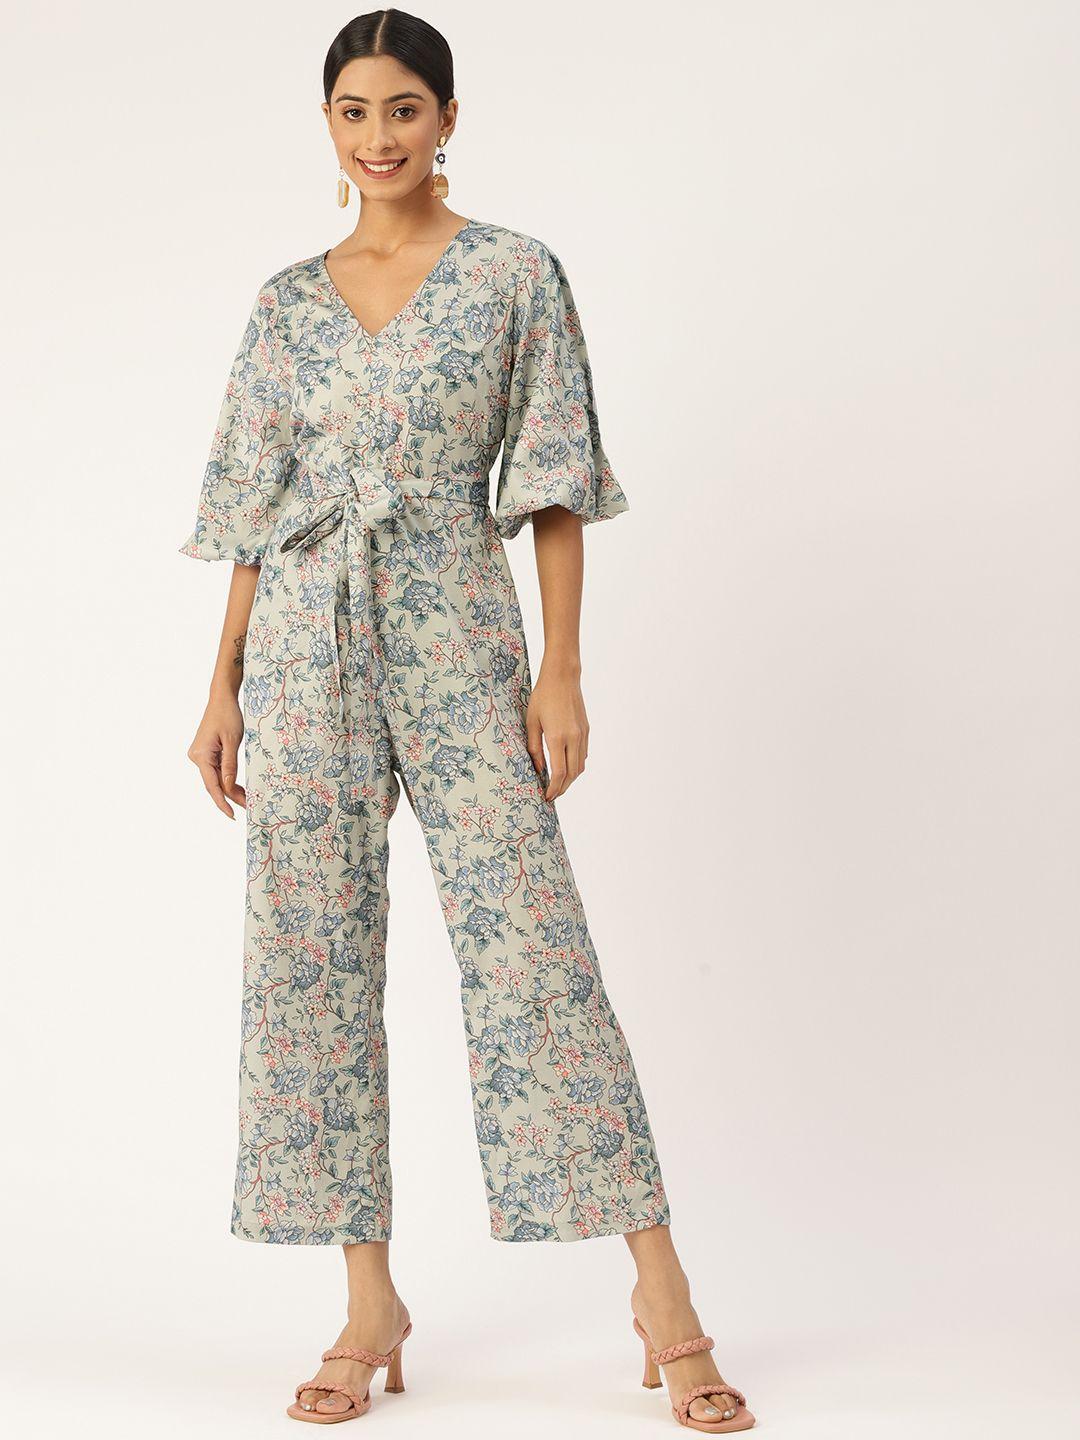 sleek-italia-floral-printed-basic-jumpsuit